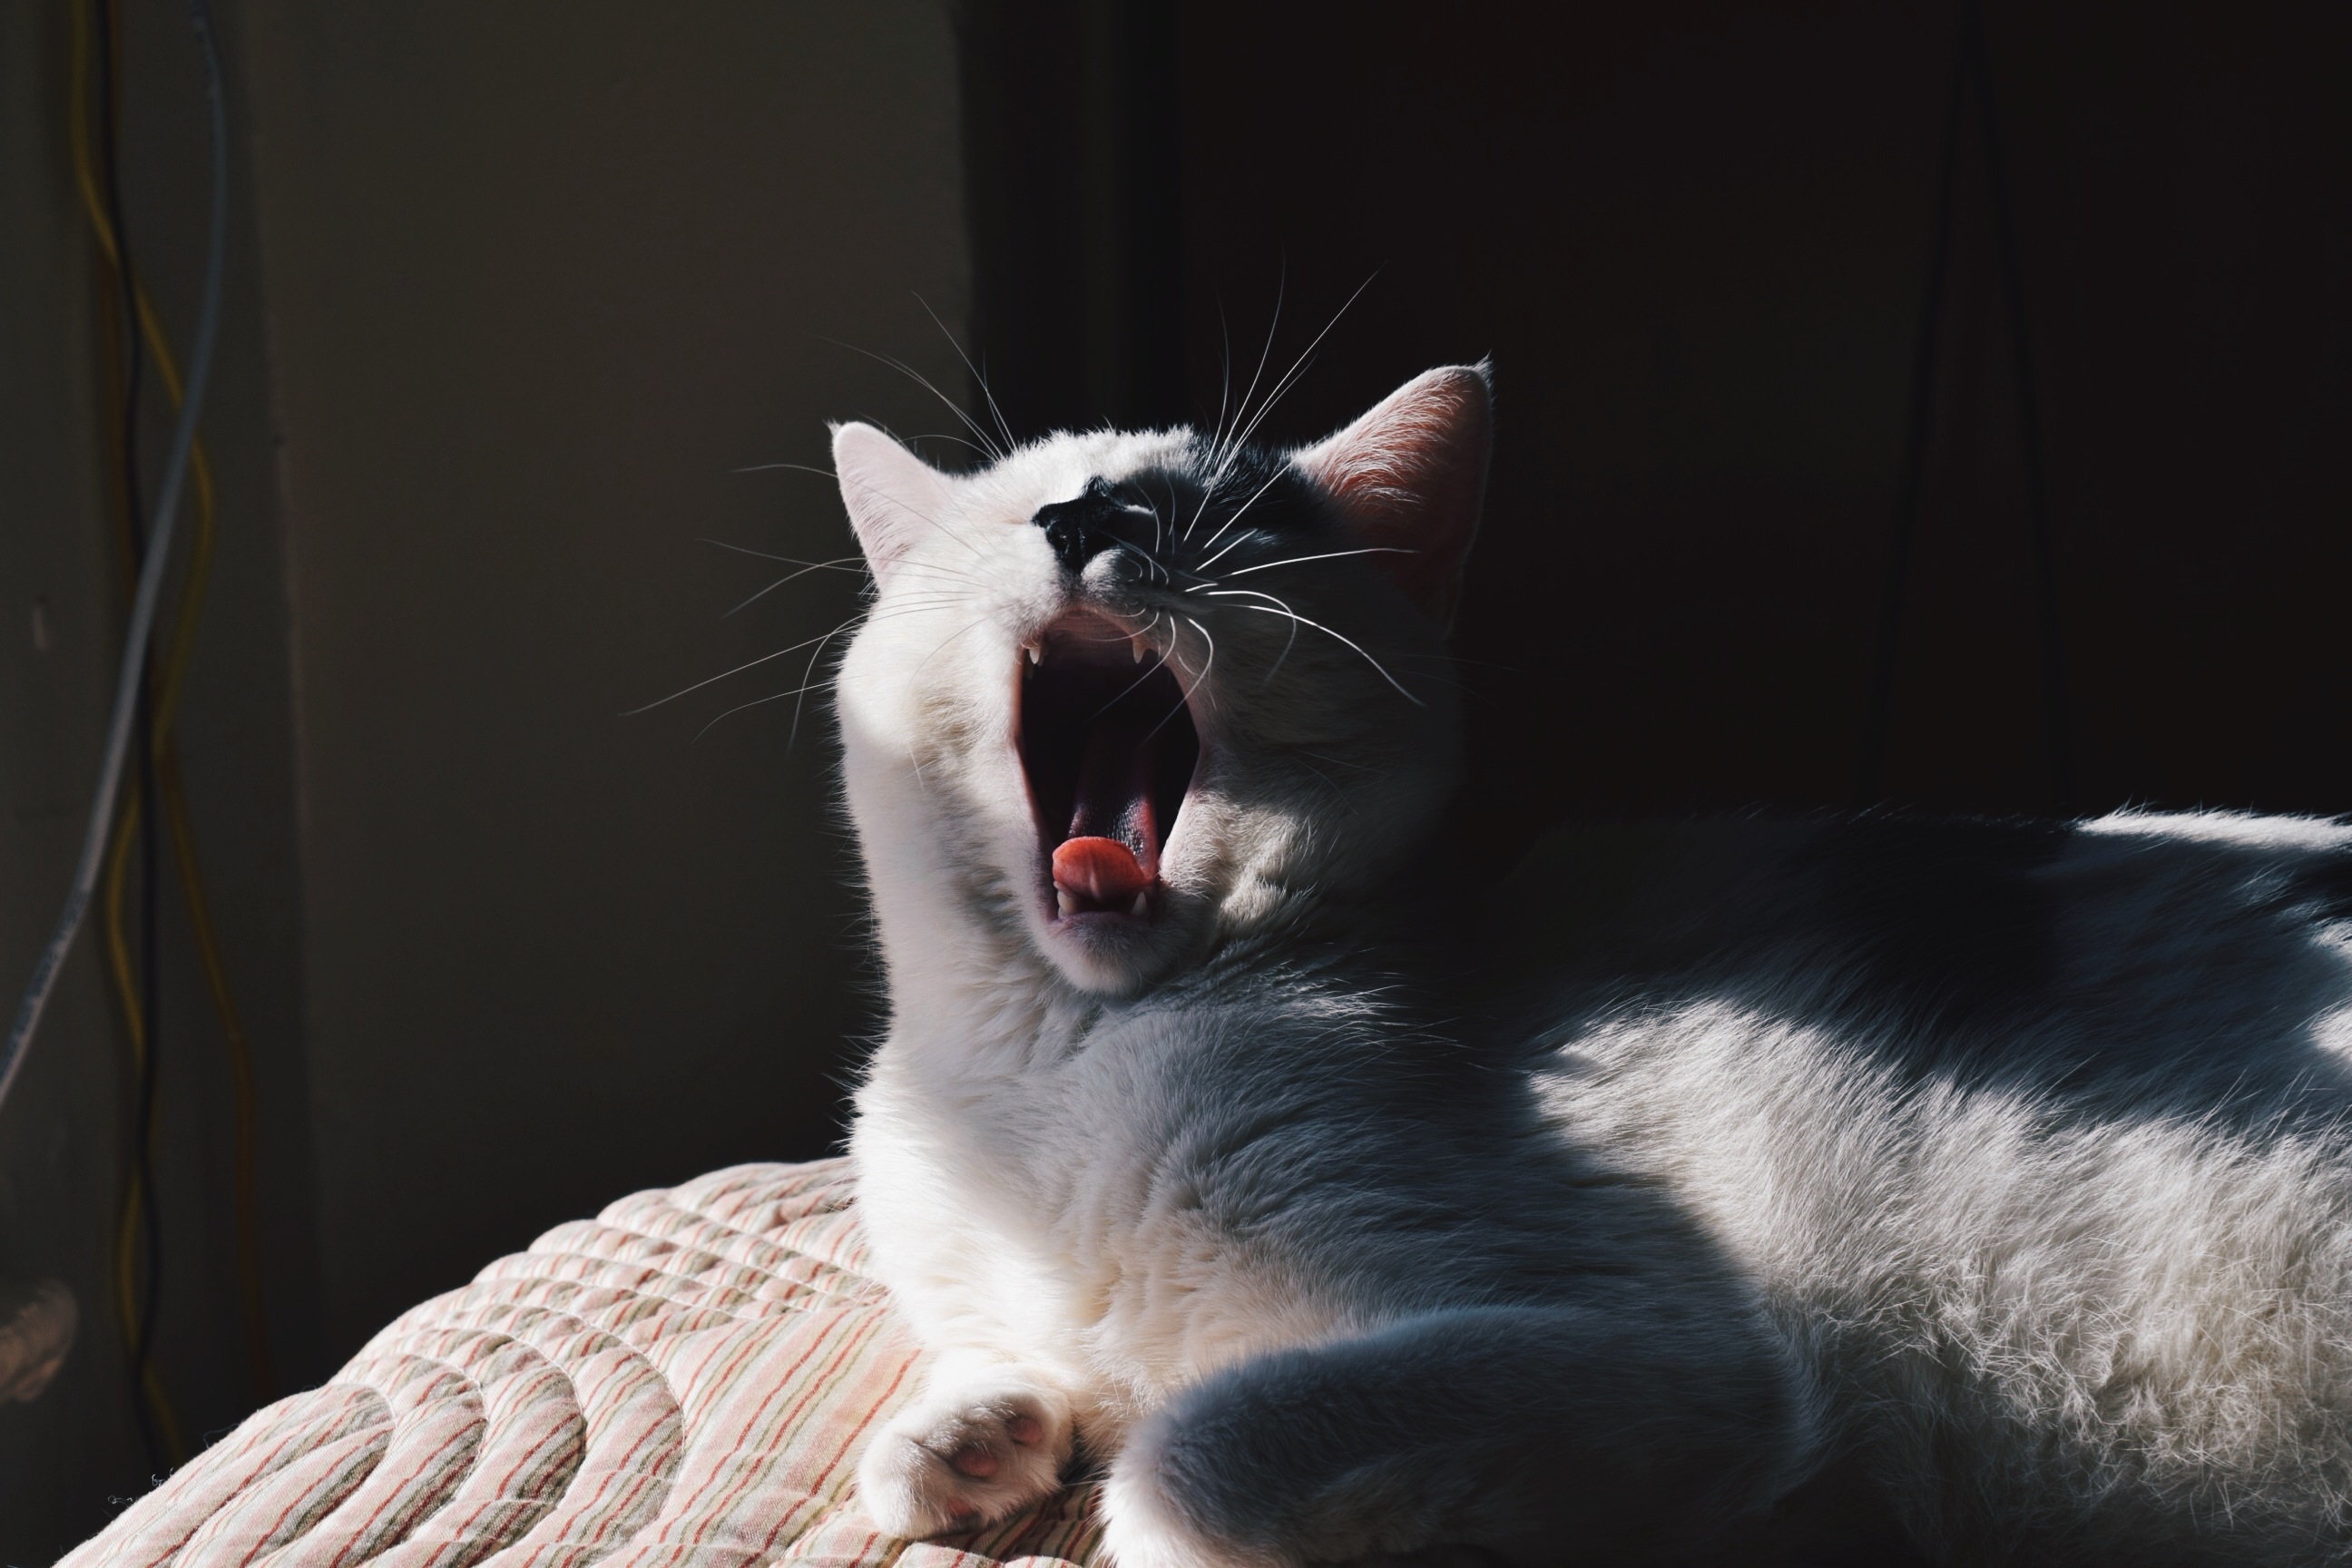 Yawning cat photo